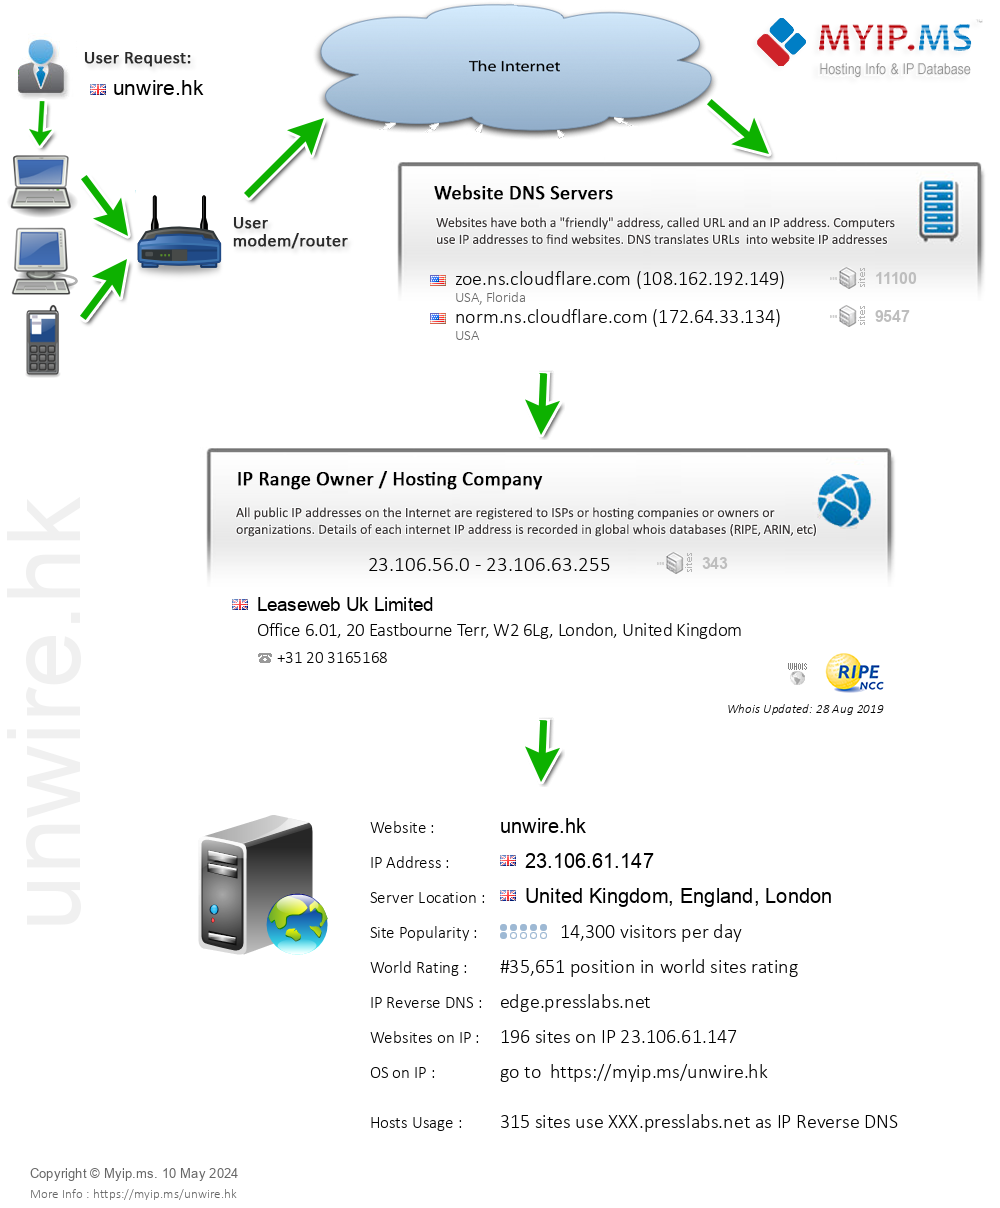 Unwire.hk - Website Hosting Visual IP Diagram